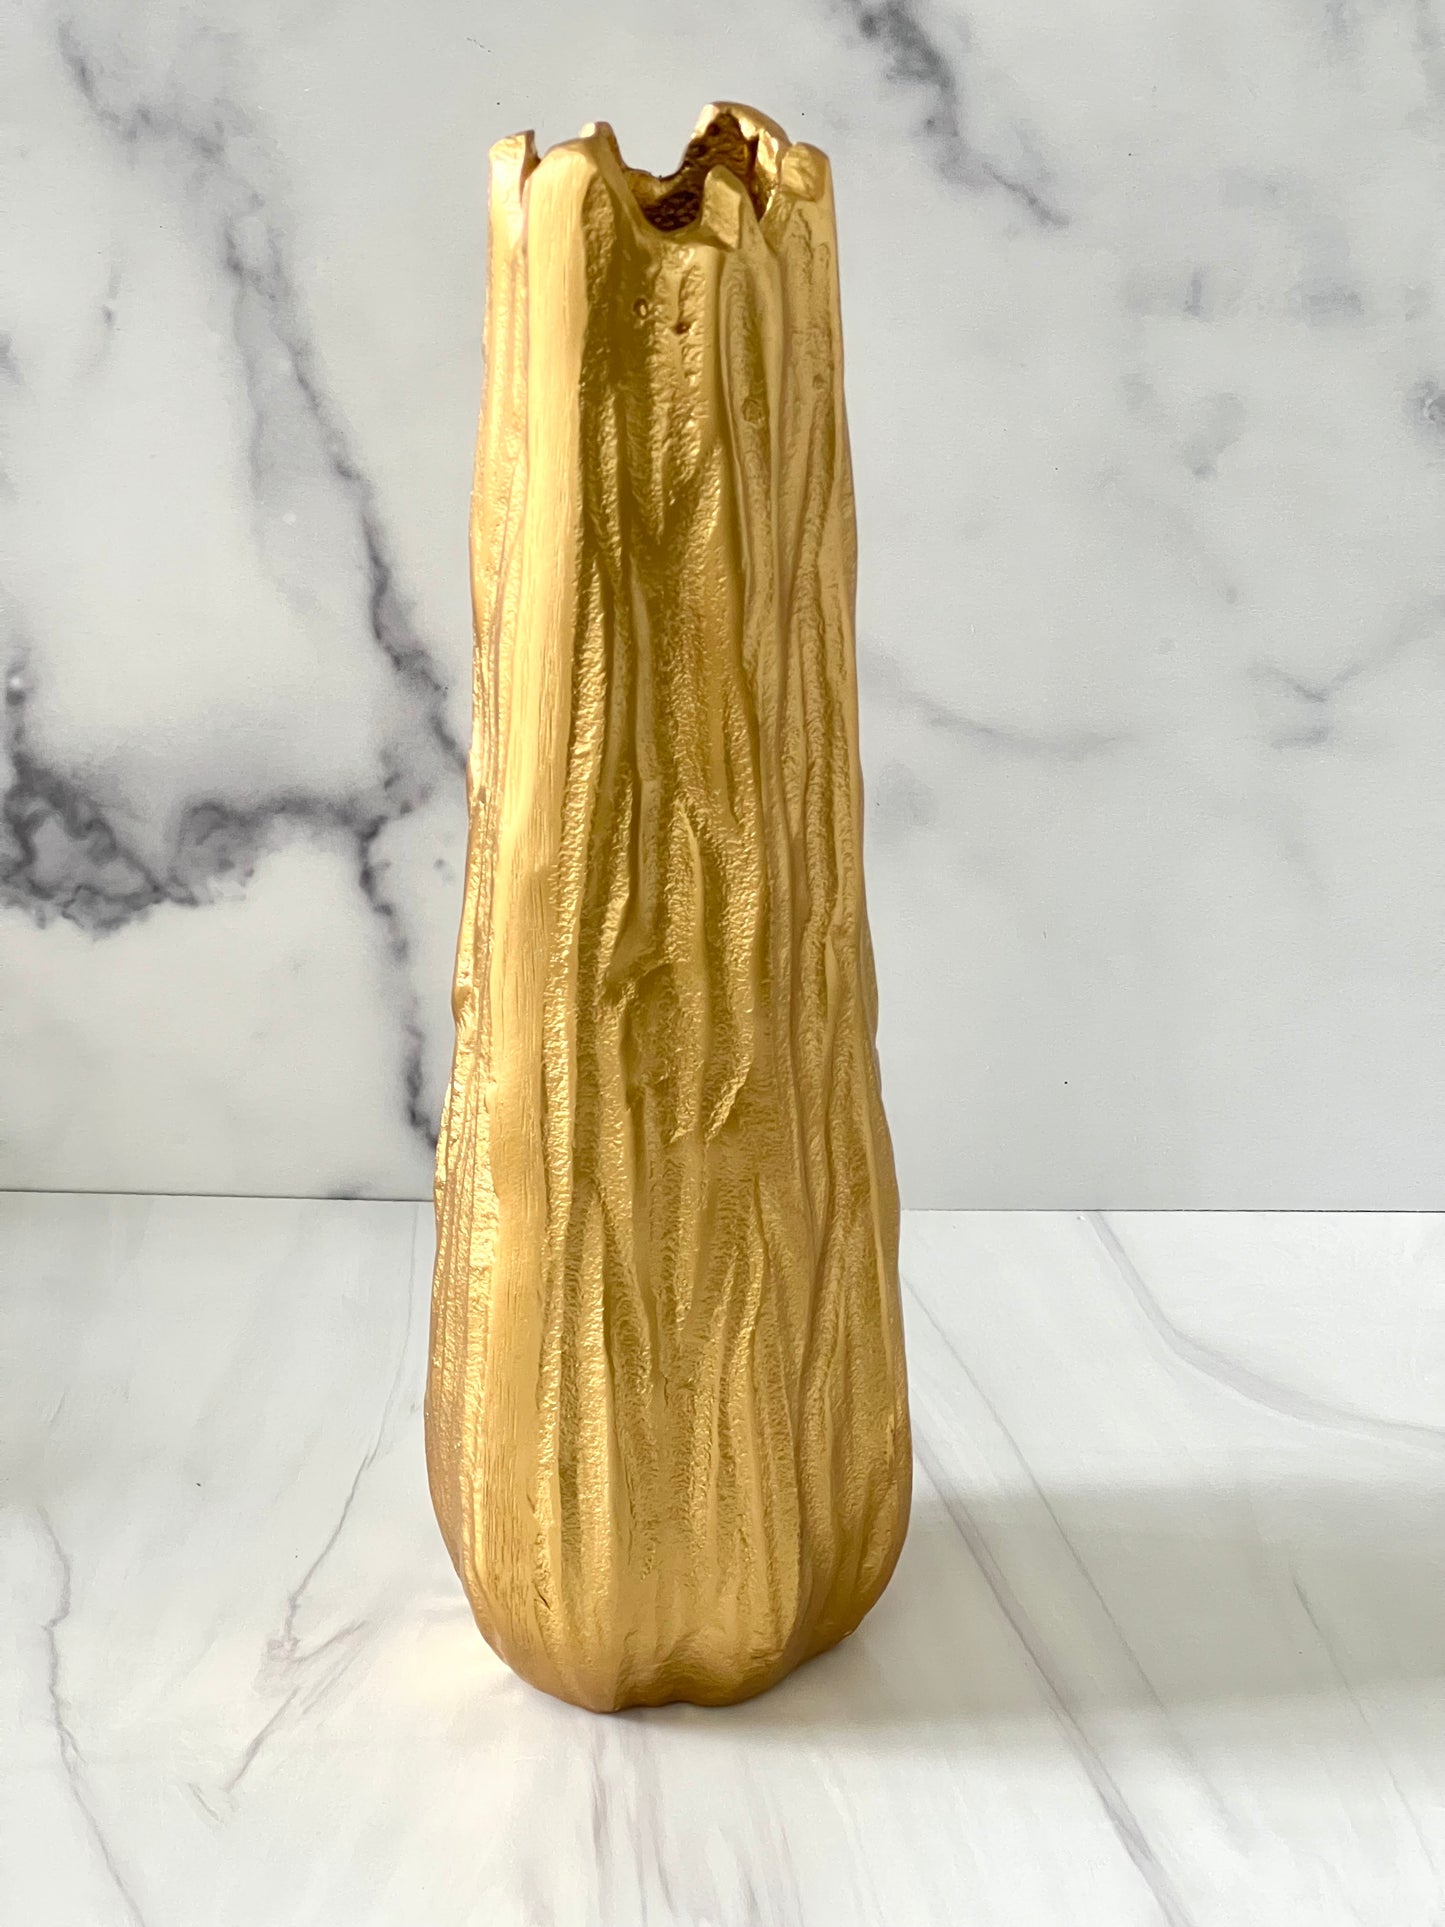 Gold Branch Vase 12" H